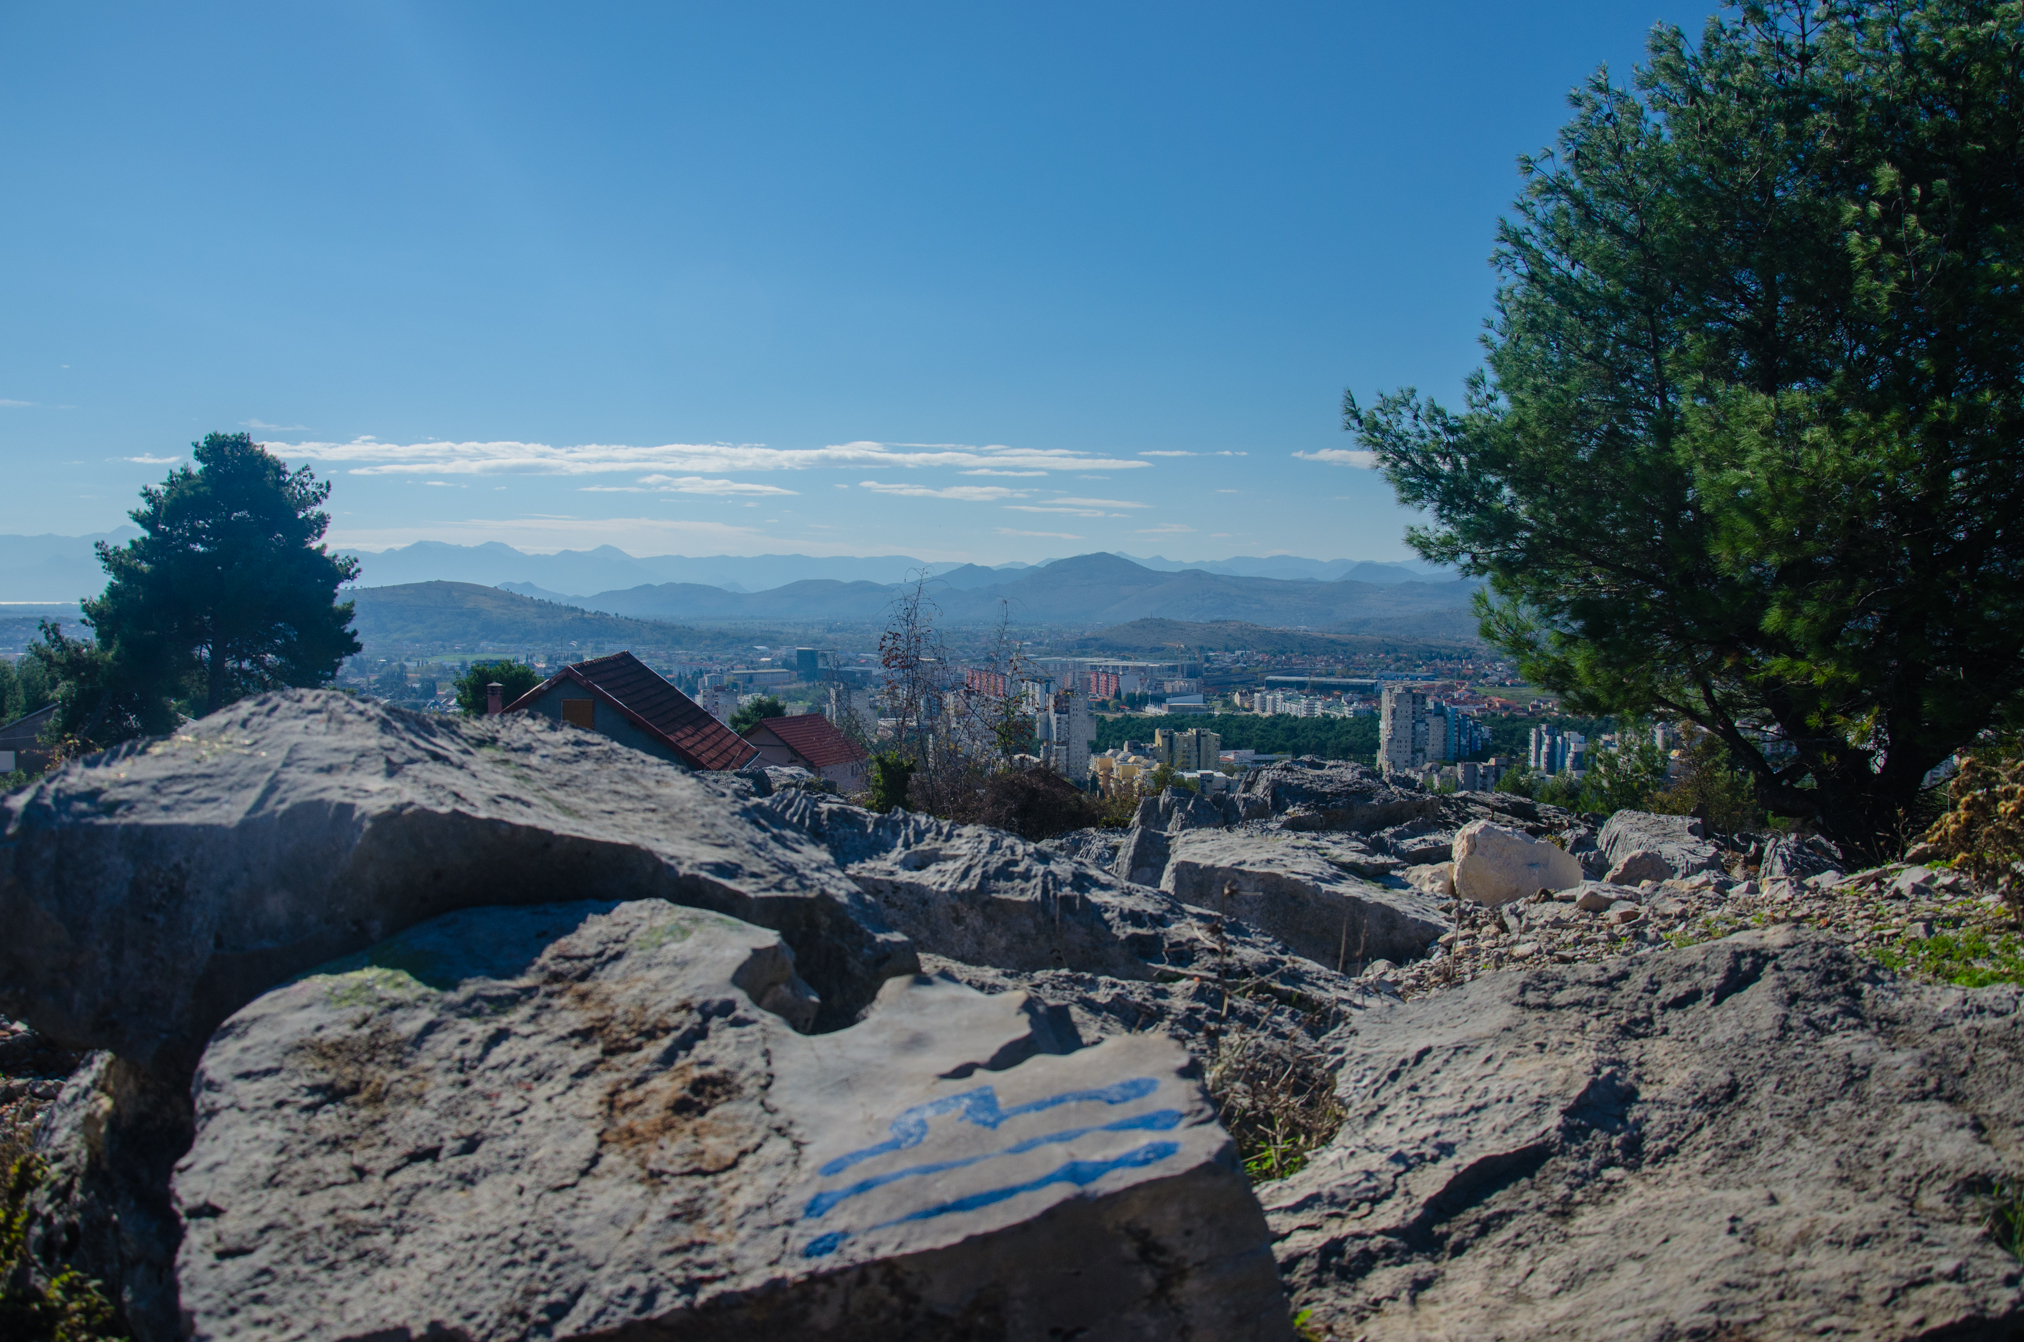 Divlja i lijepa, takva je Podgorica sa Malog brda. I u mojim očima